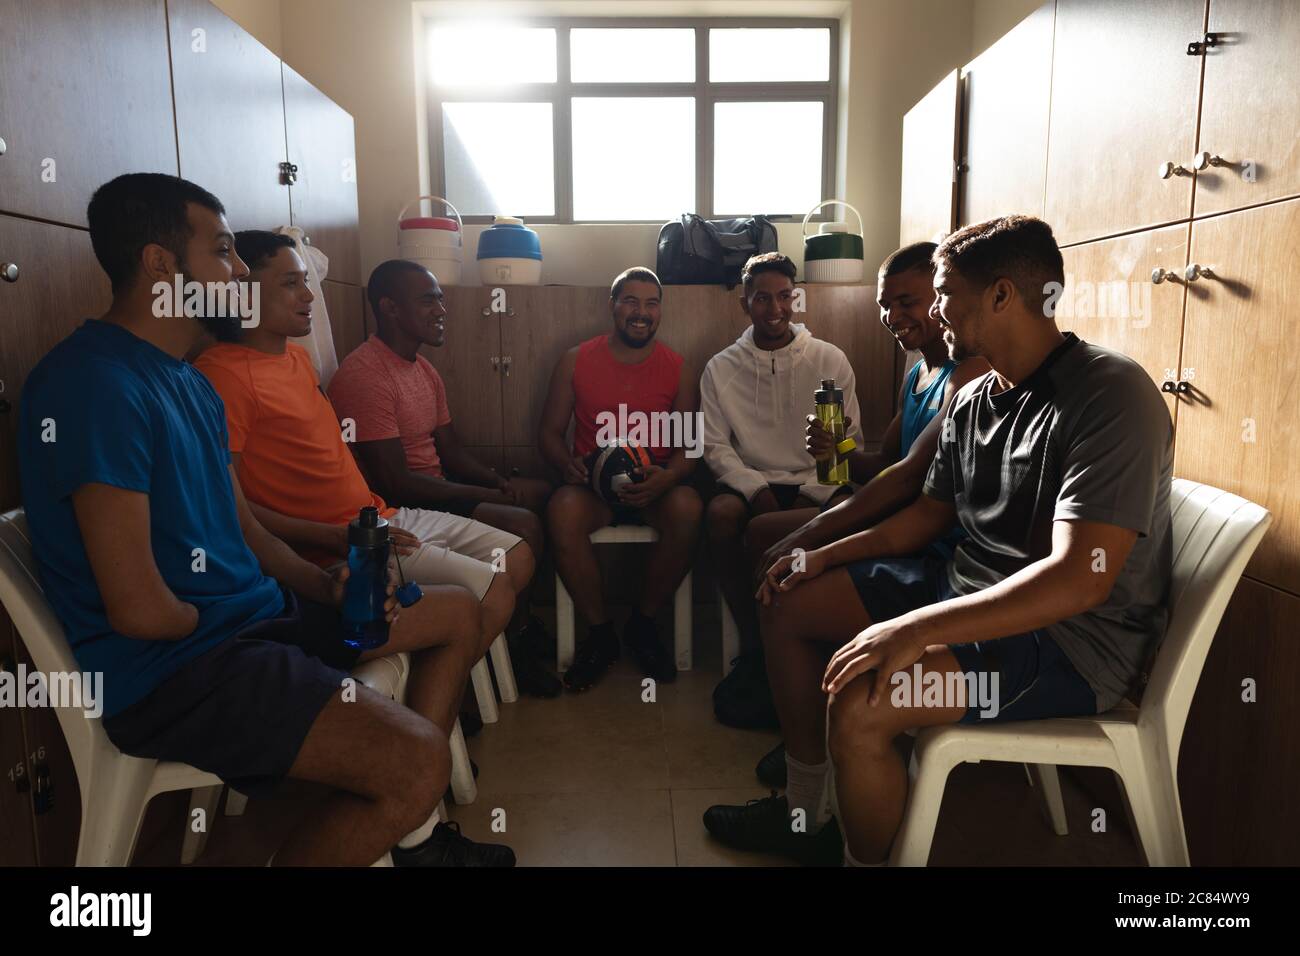 Groupe multiethnique de joueurs de football portant des vêtements de sport assis dans le vestiaire pendant une pause dans le match, tenant le ballon et la bouteille d'eau souriant Banque D'Images